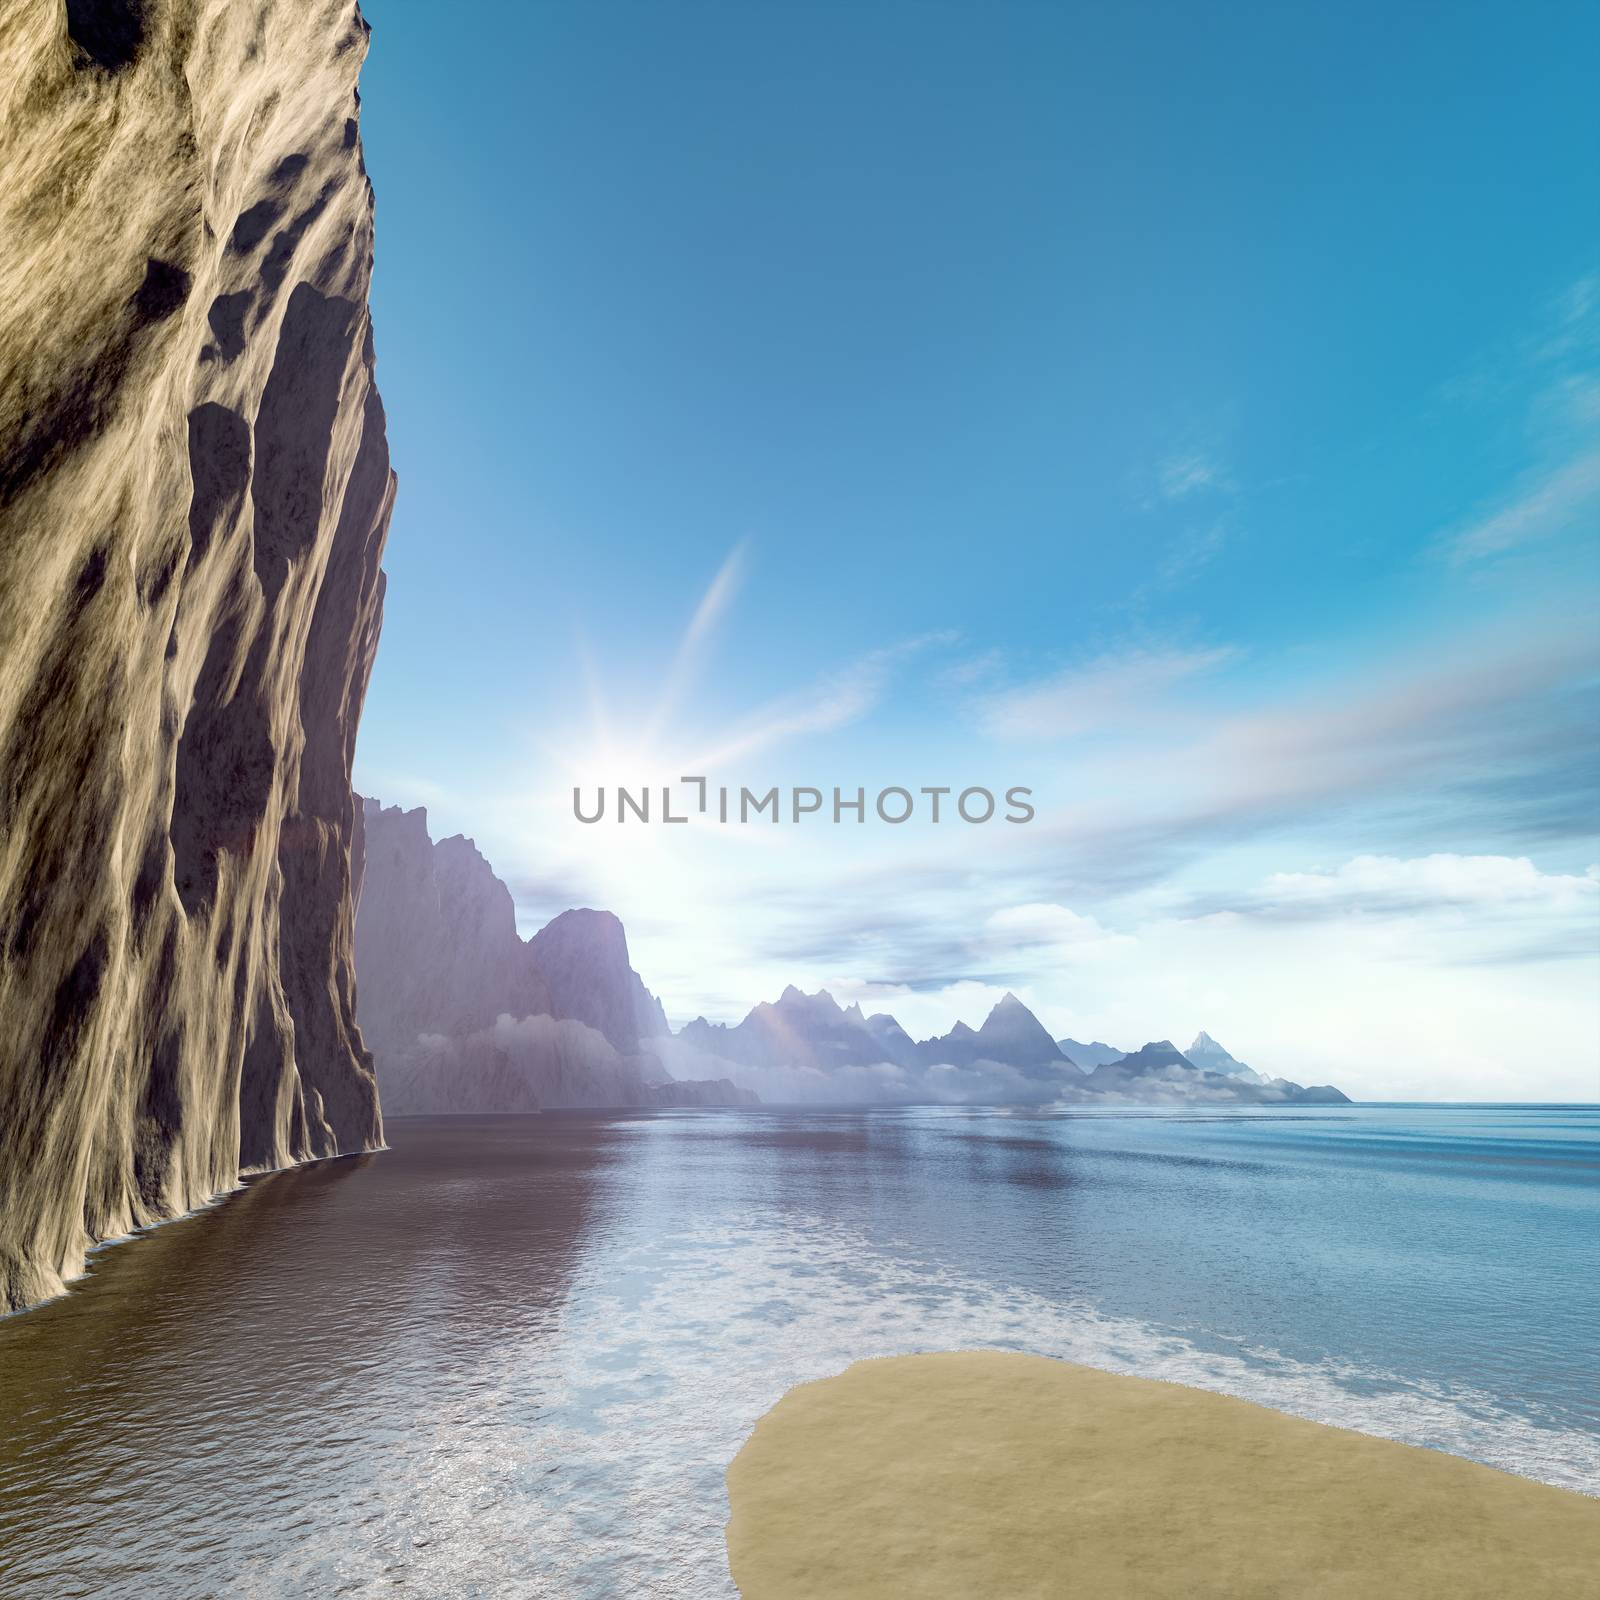 Beautiful rock face ocean scenery by magann